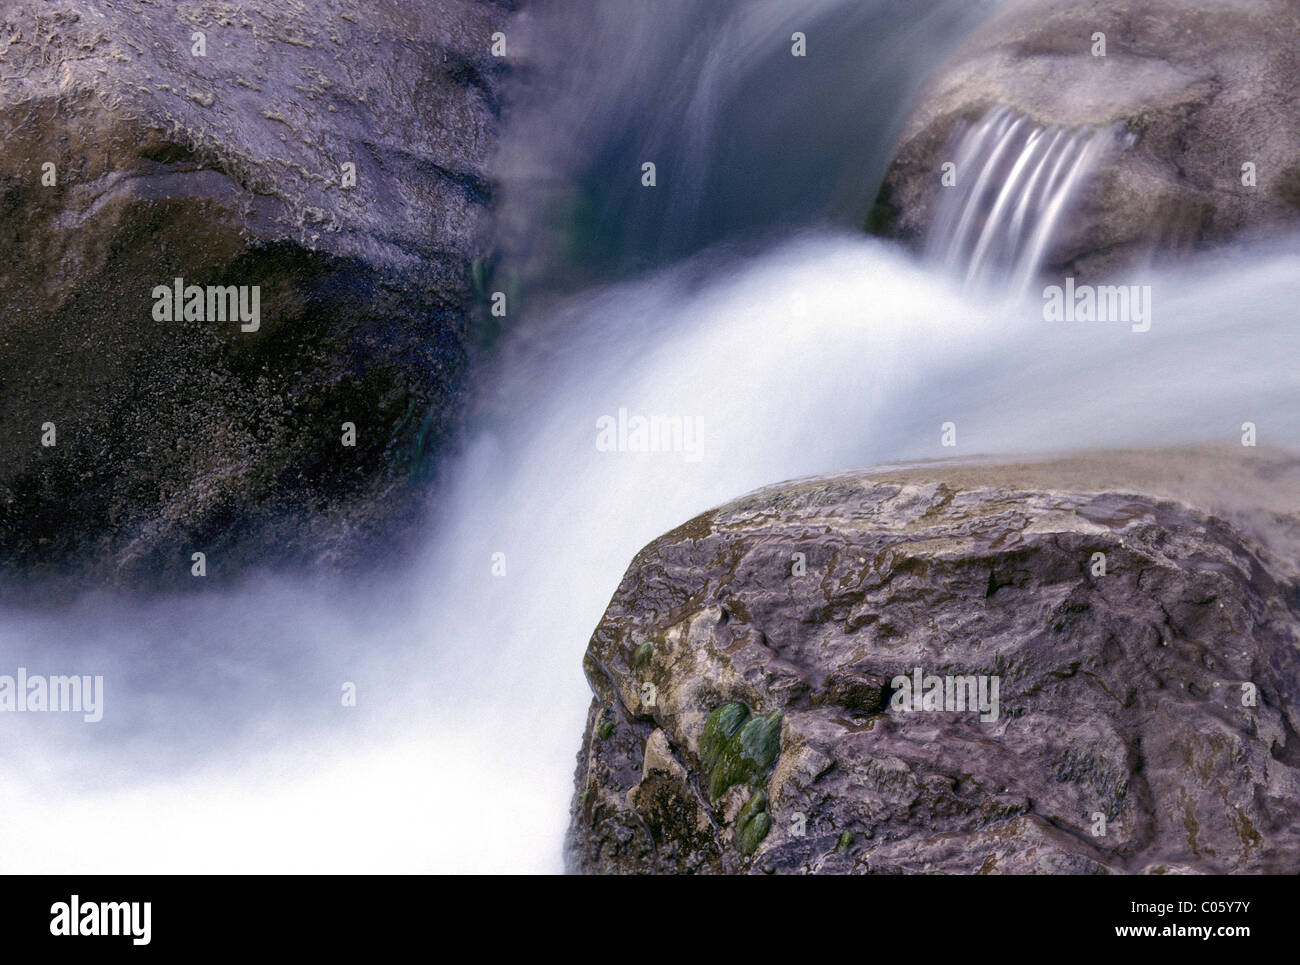 Détail de Virgin River cascade avec des blocs de grès, Zion Canyon, Zion National Park, Utah, USA. Banque D'Images